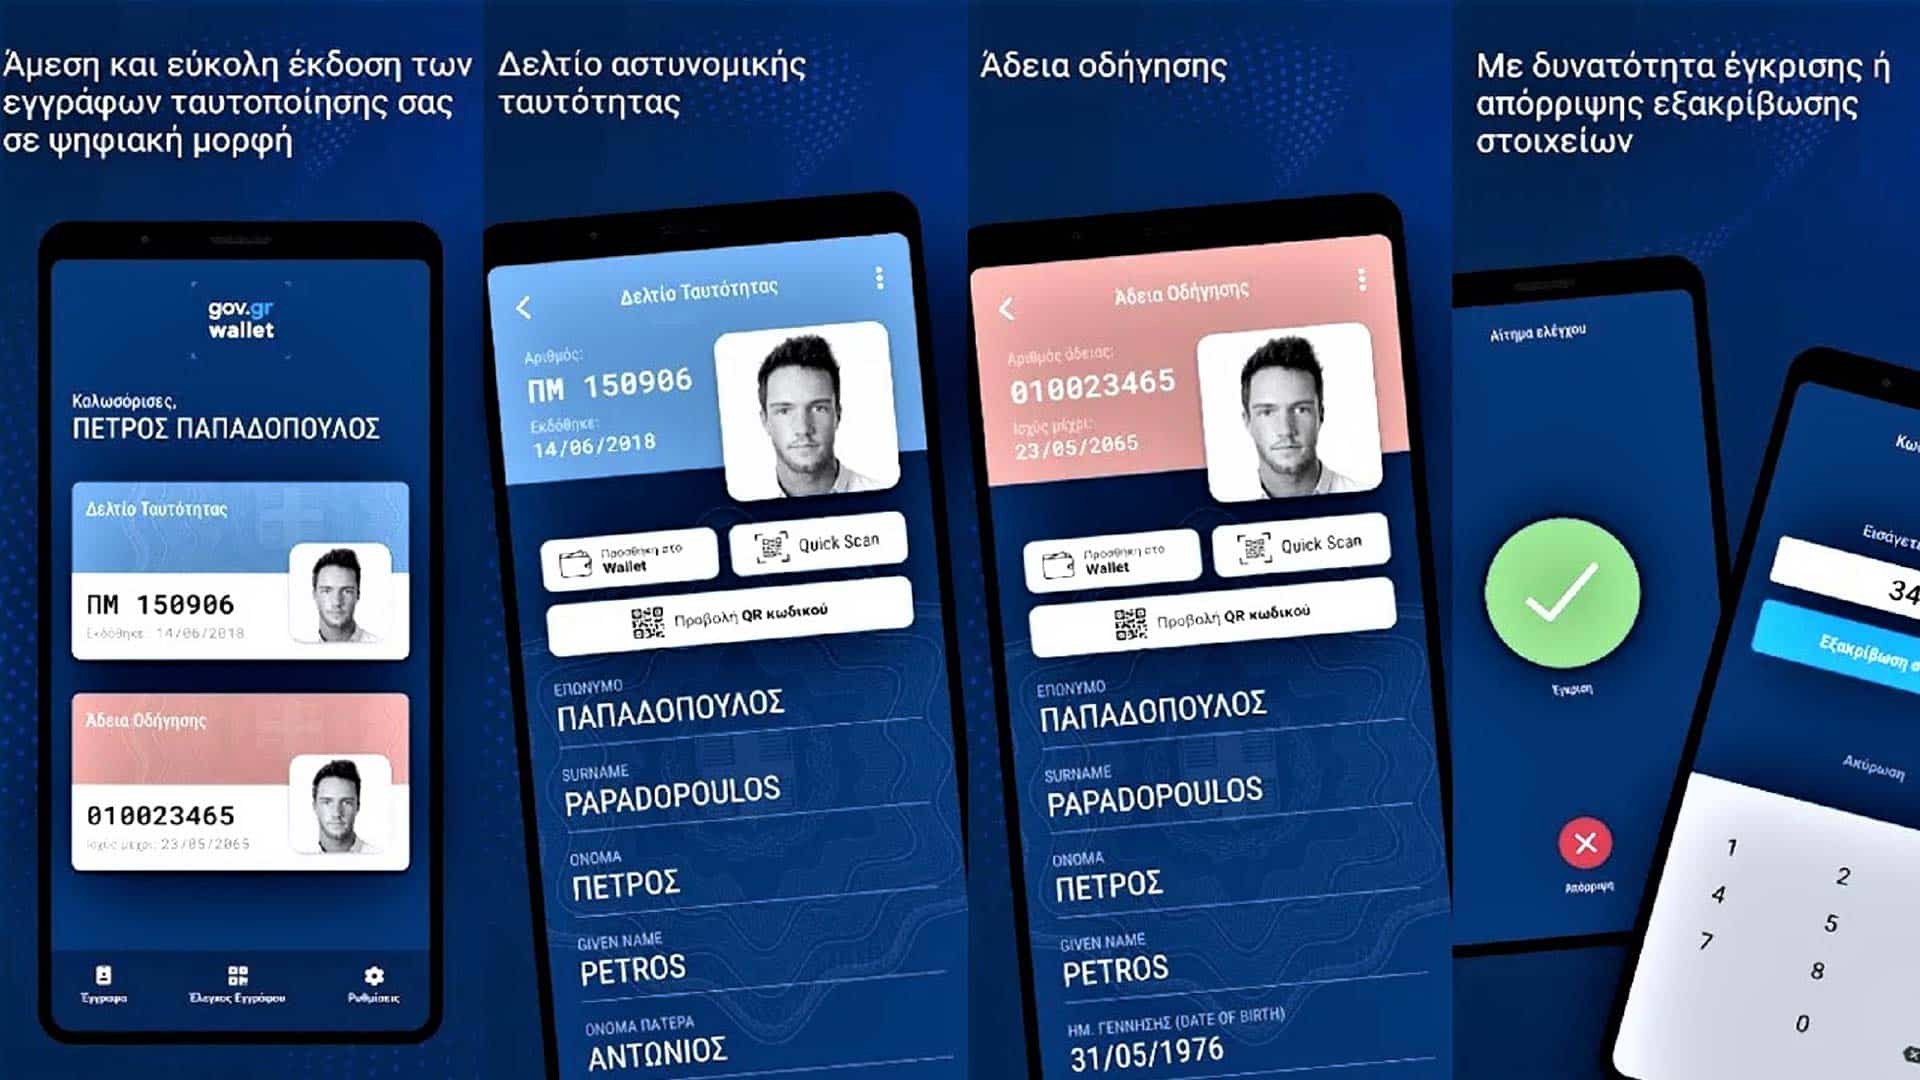 Gov.gr Wallet: Πως θα κατεβάσετε ταυτότητα και δίπλωμα οδήγησης στο κινητό